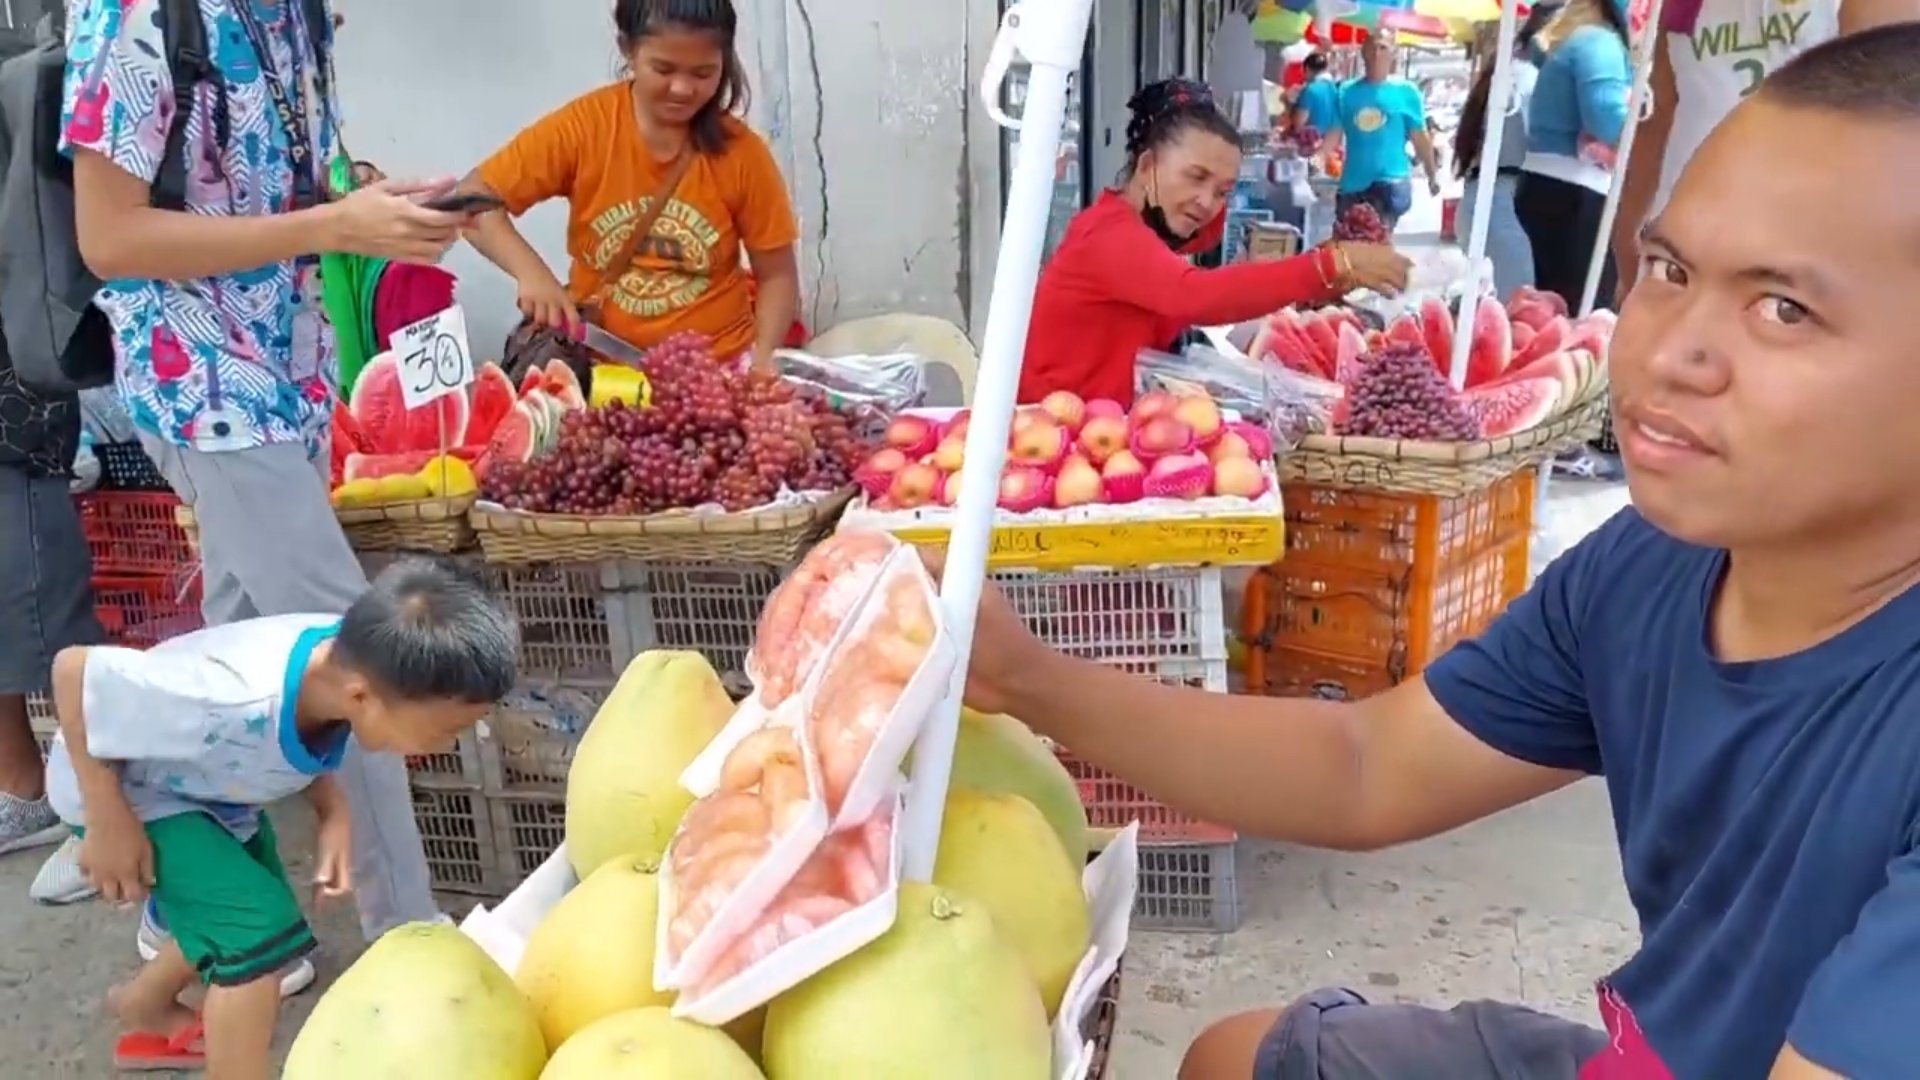 PHILIPPINEN BLOG - Obst zum Verzehr auf der Straße